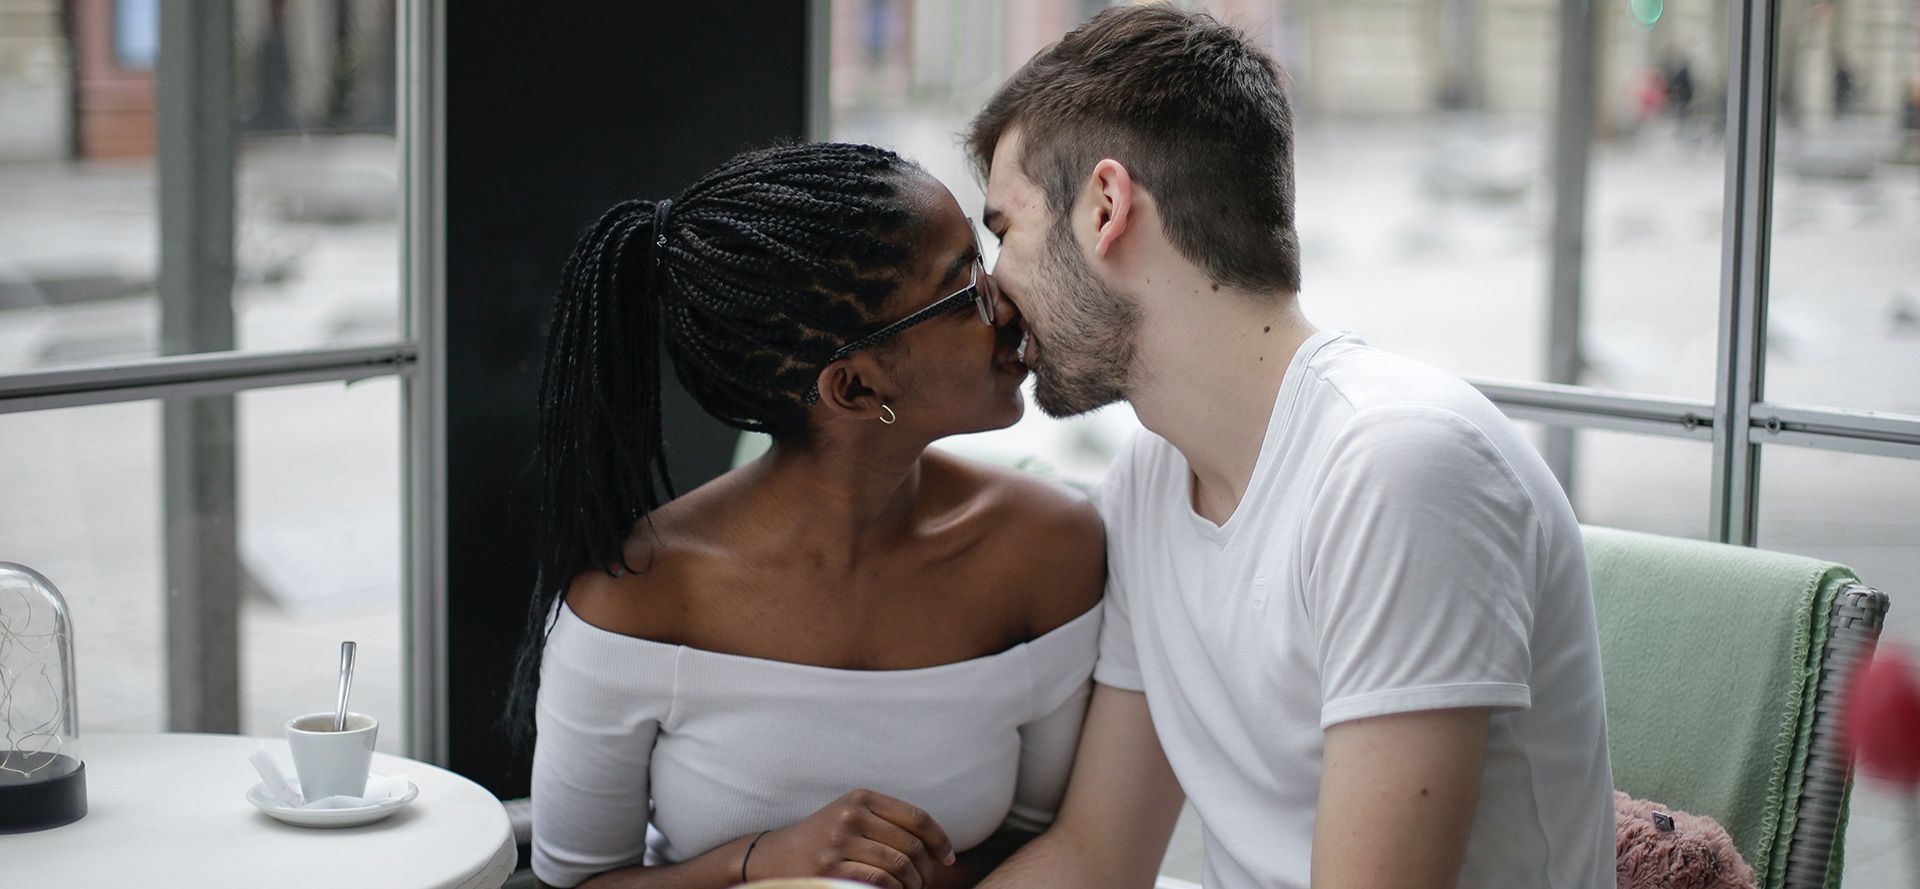 Ett internationellt par kysser varandra på ett café.